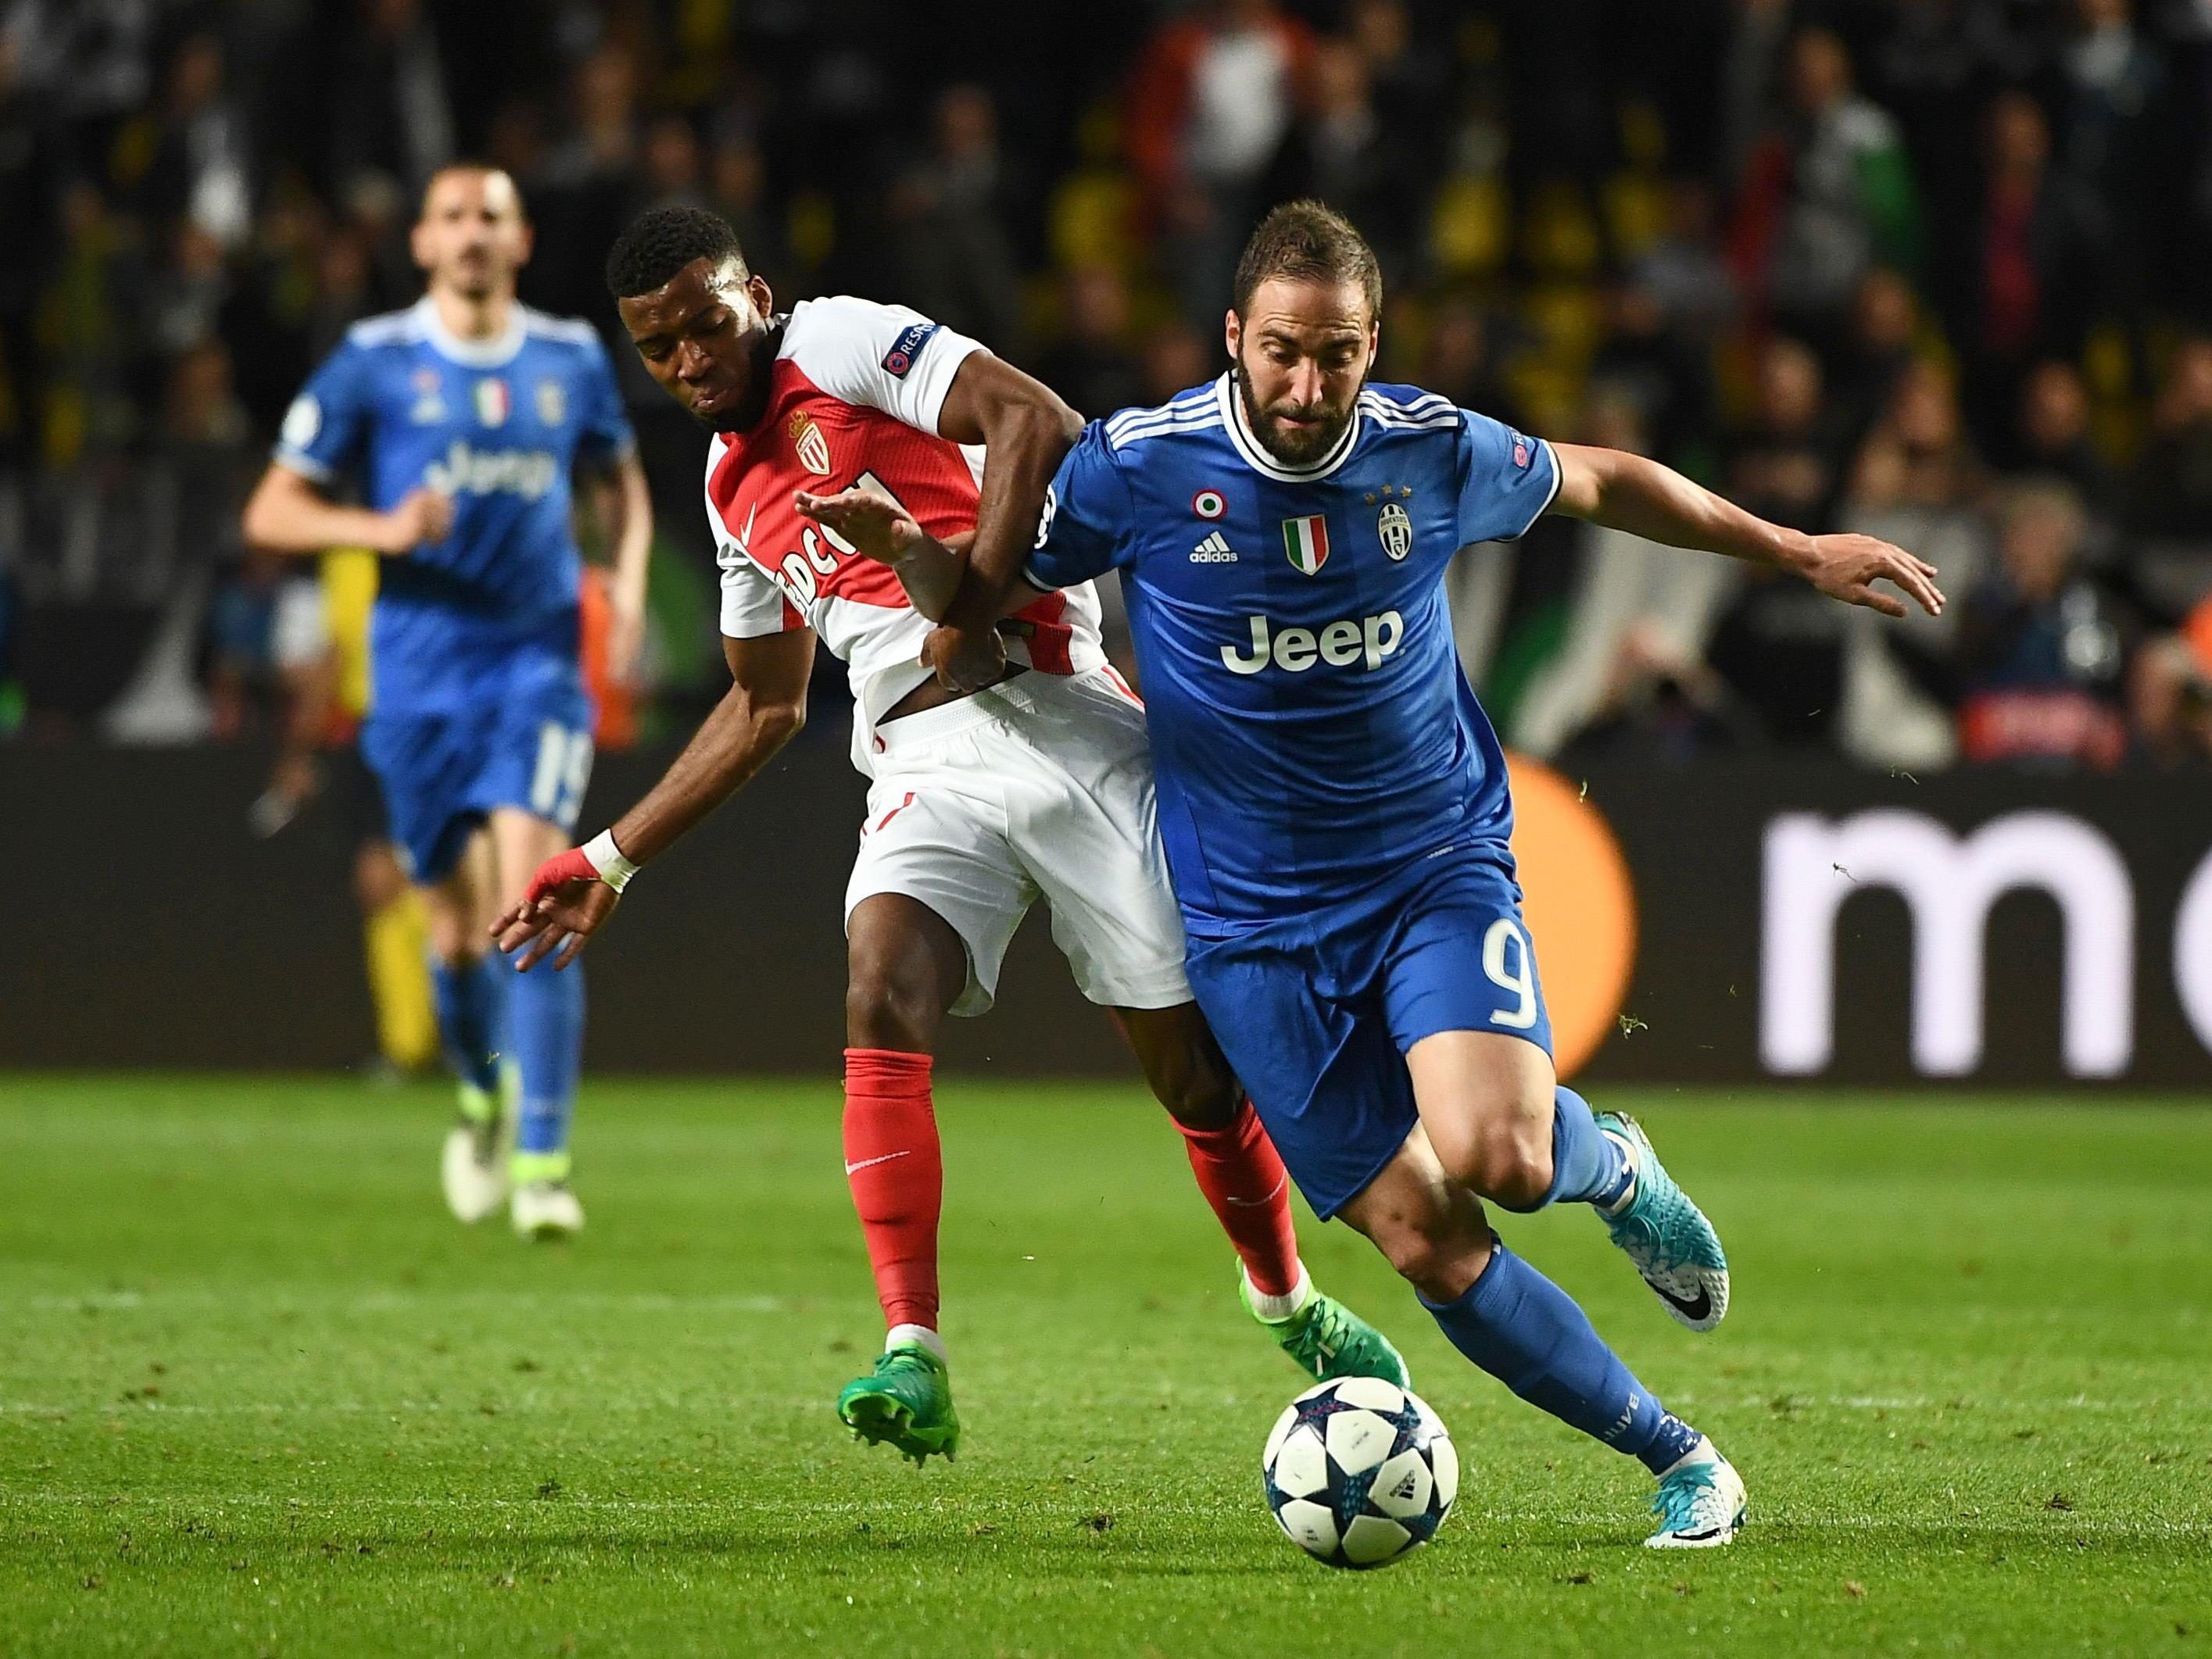 Juventus Turin empfängt die AS Monaco im Rückspiel des Semifinales der Champions League.